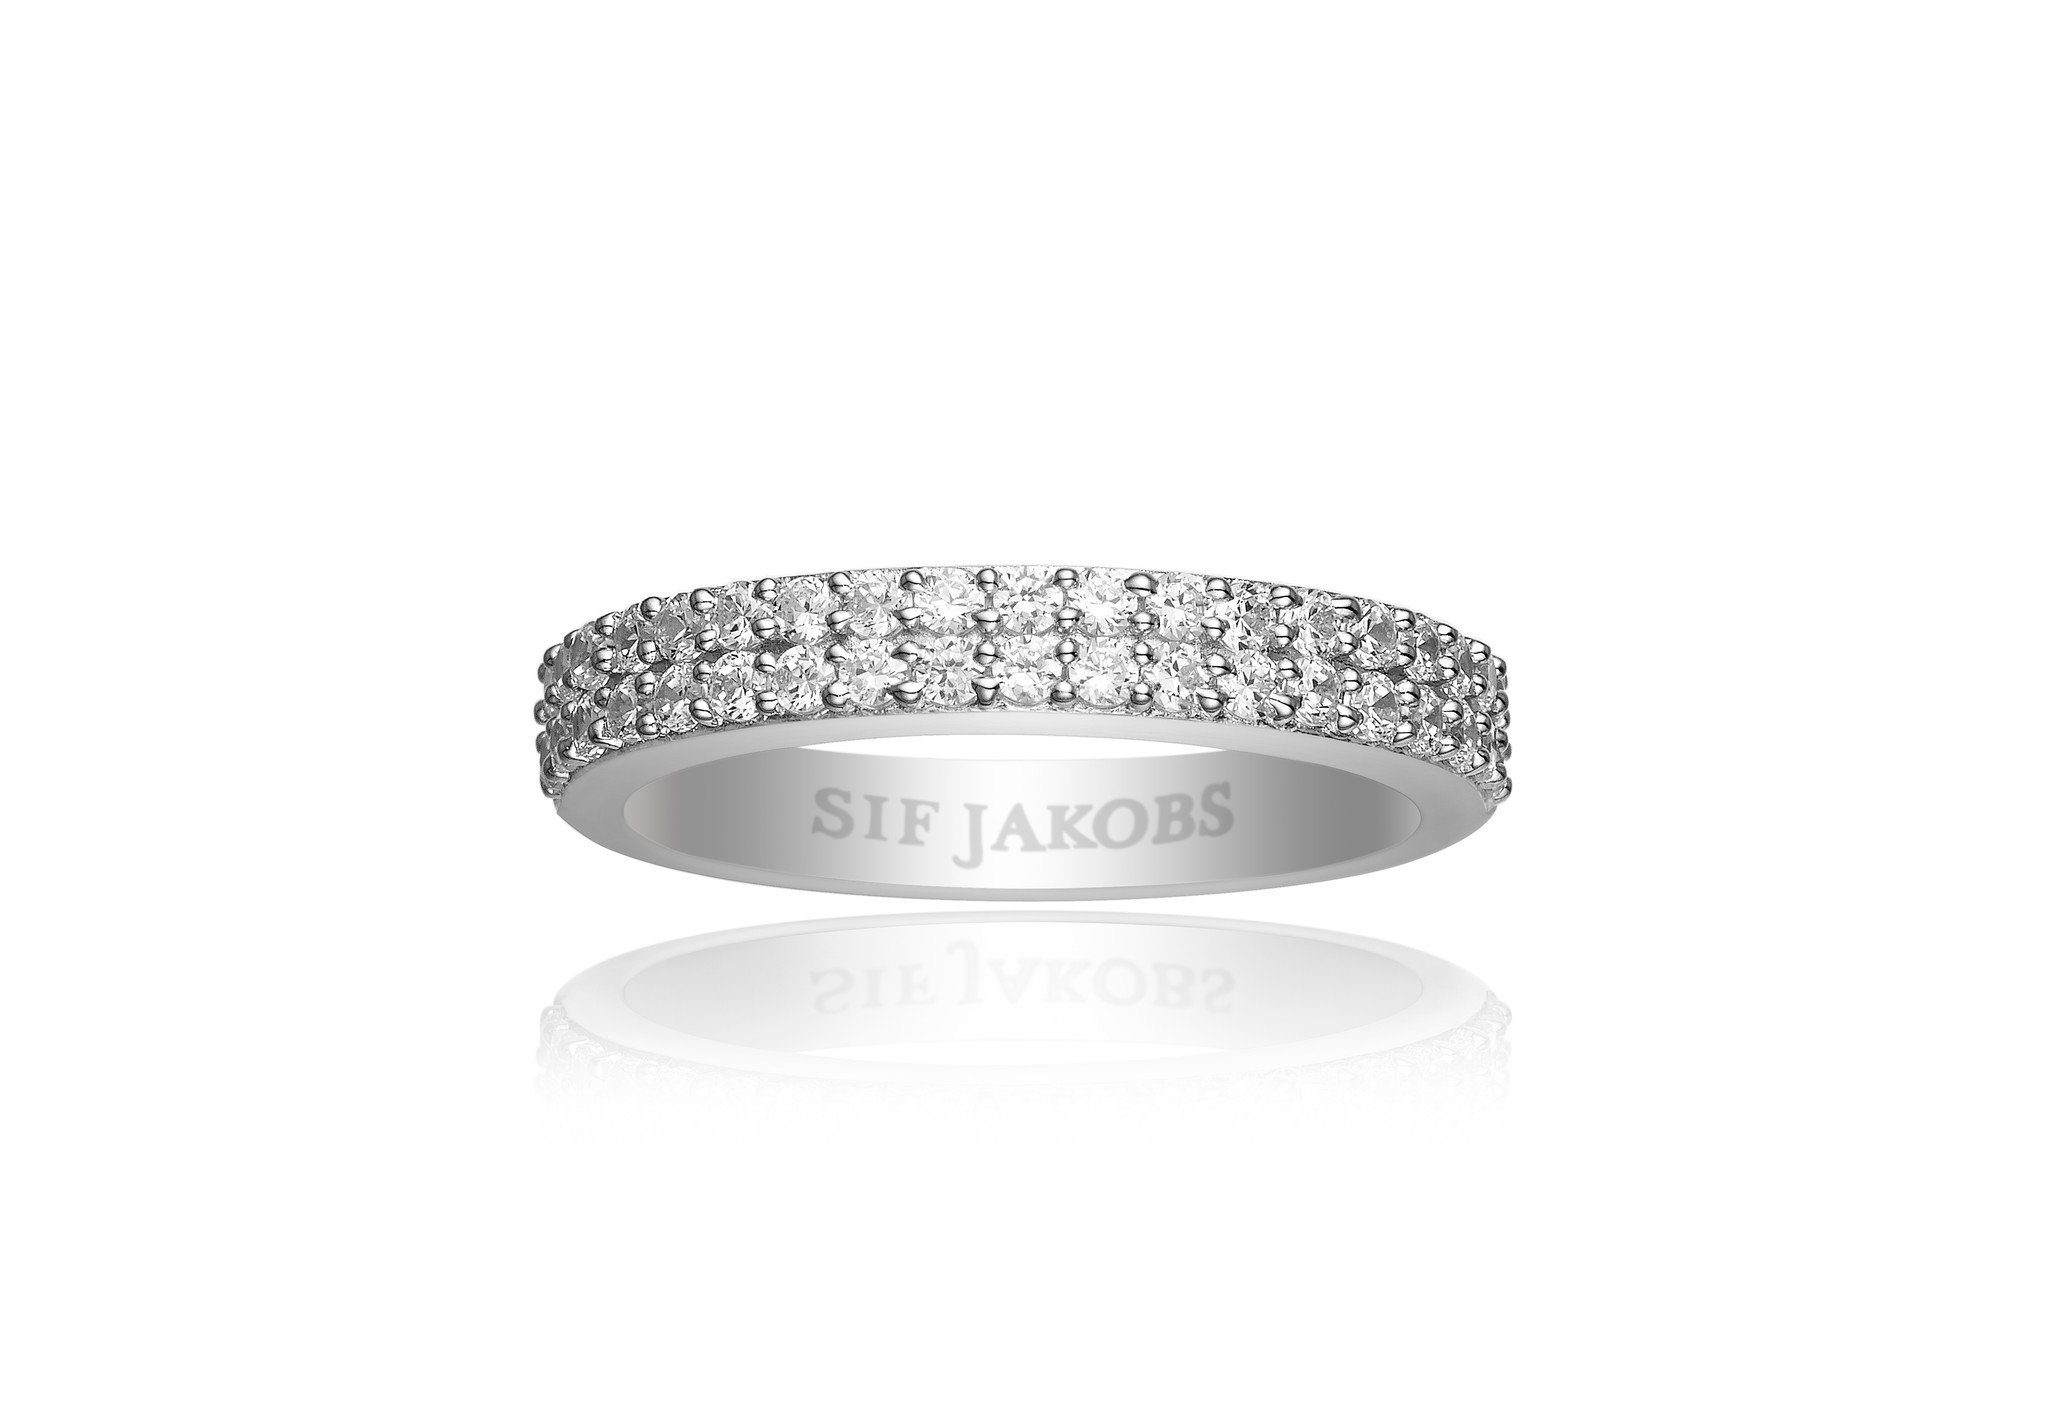 Sif Jakobs Jewellery Fingerring Zirkonien CORTE mit MIT ZIRKONIA 50% WEISSEN RING (56), DUE